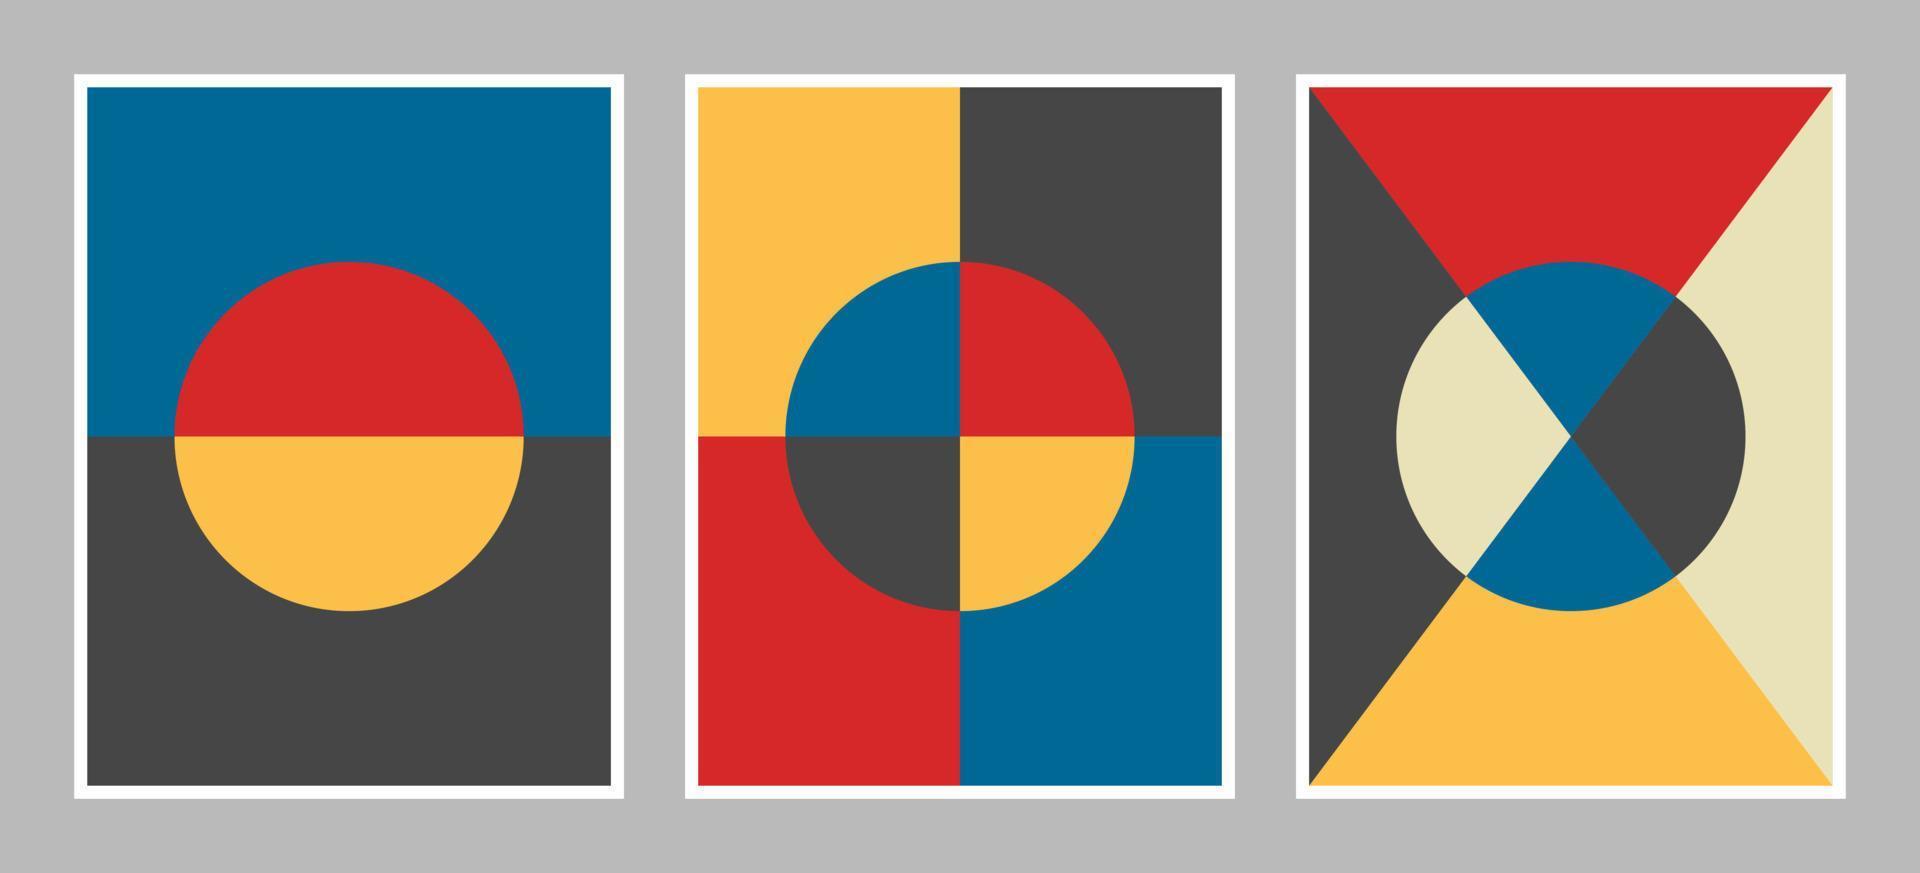 sfondo moderno bauhaus con forme geometriche di colore rosso, giallo, blu, nero e bianco vettore